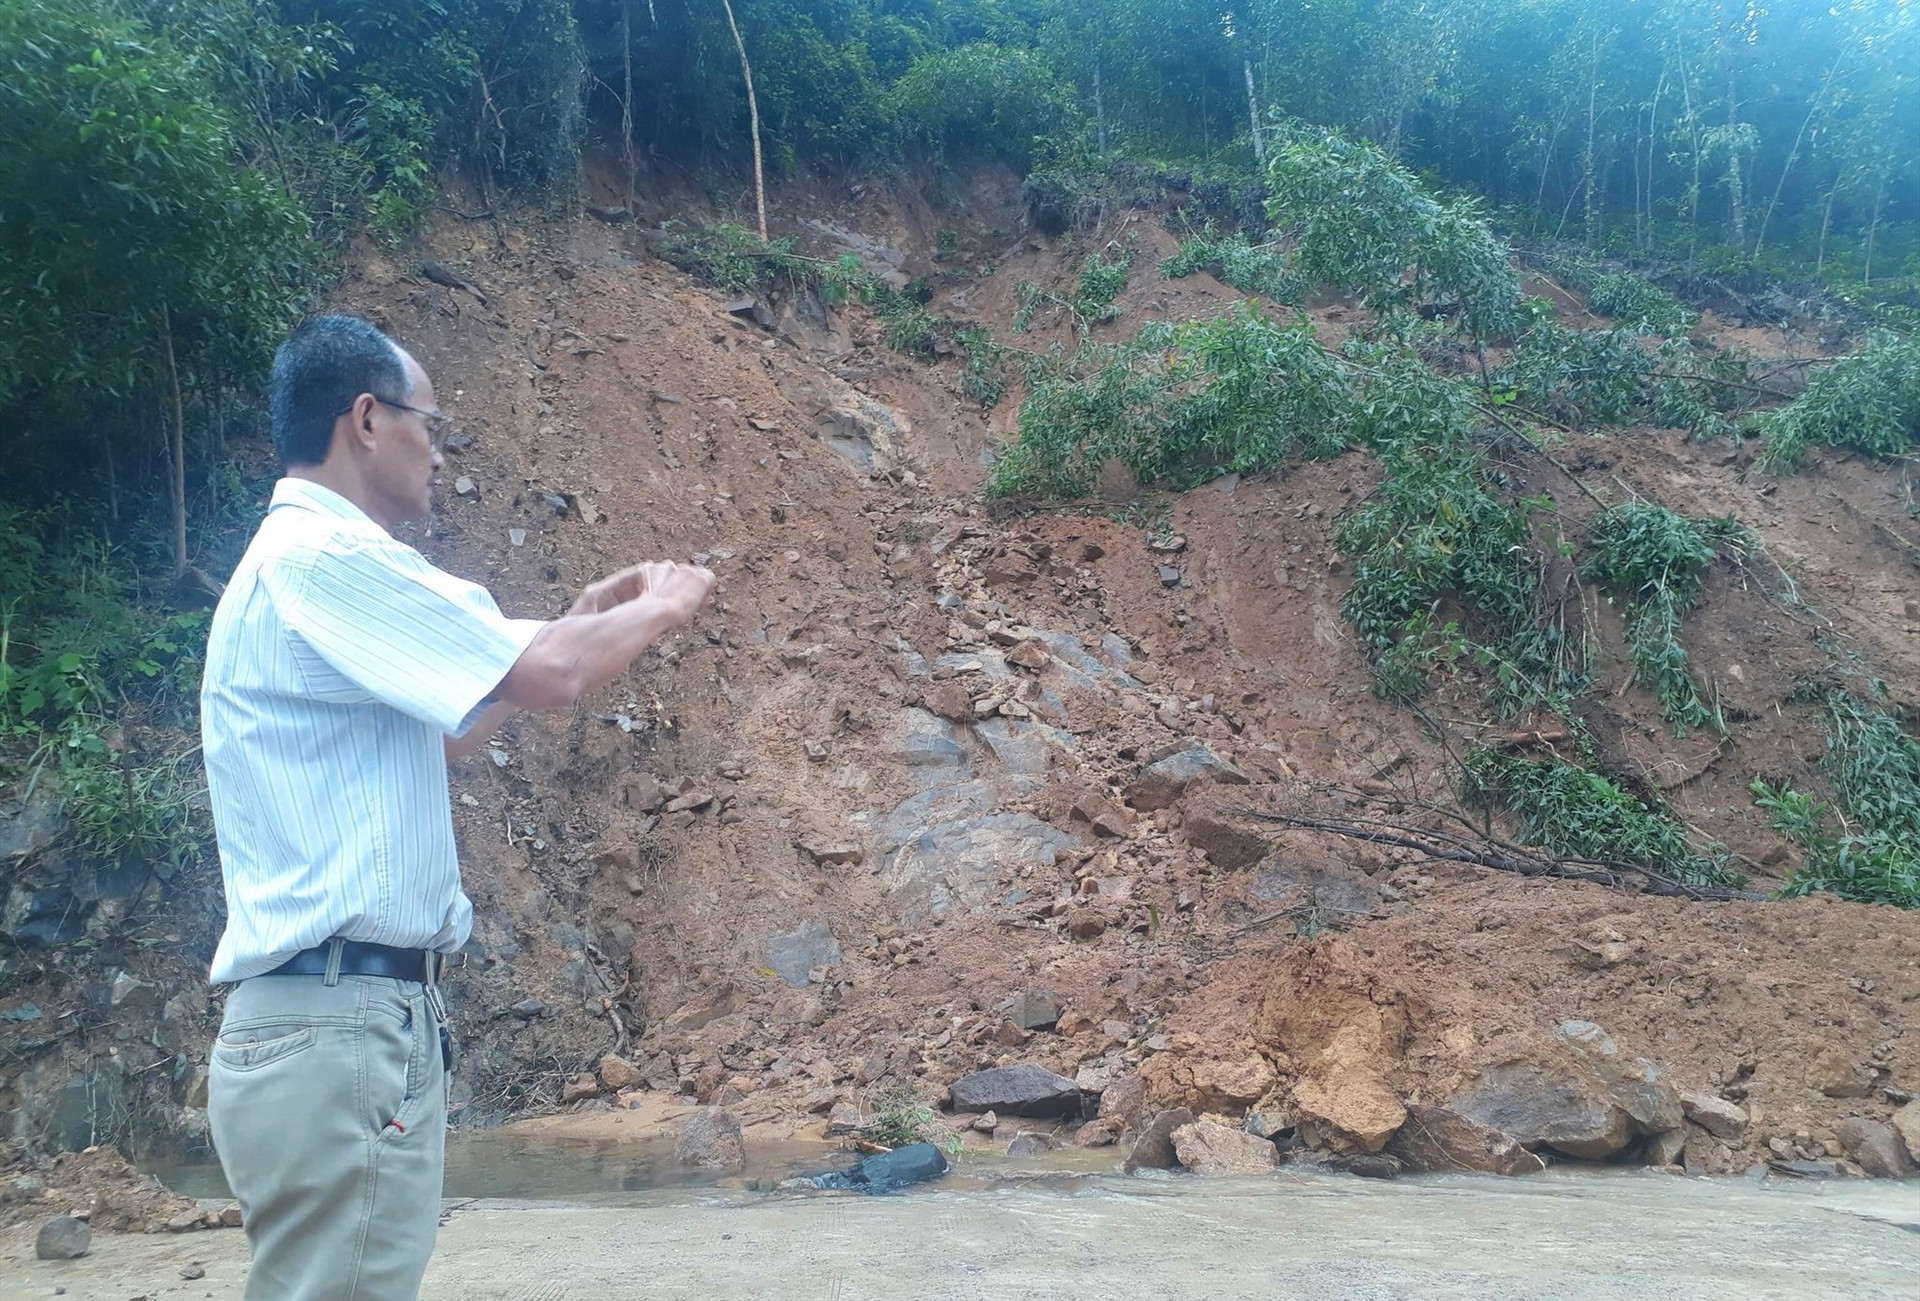 Đất đá trên đồi núi ở khu vực Đèo Le đang sạt lở và có nguy cơ đổ sập với khối lượng lớn. Ảnh: T.S